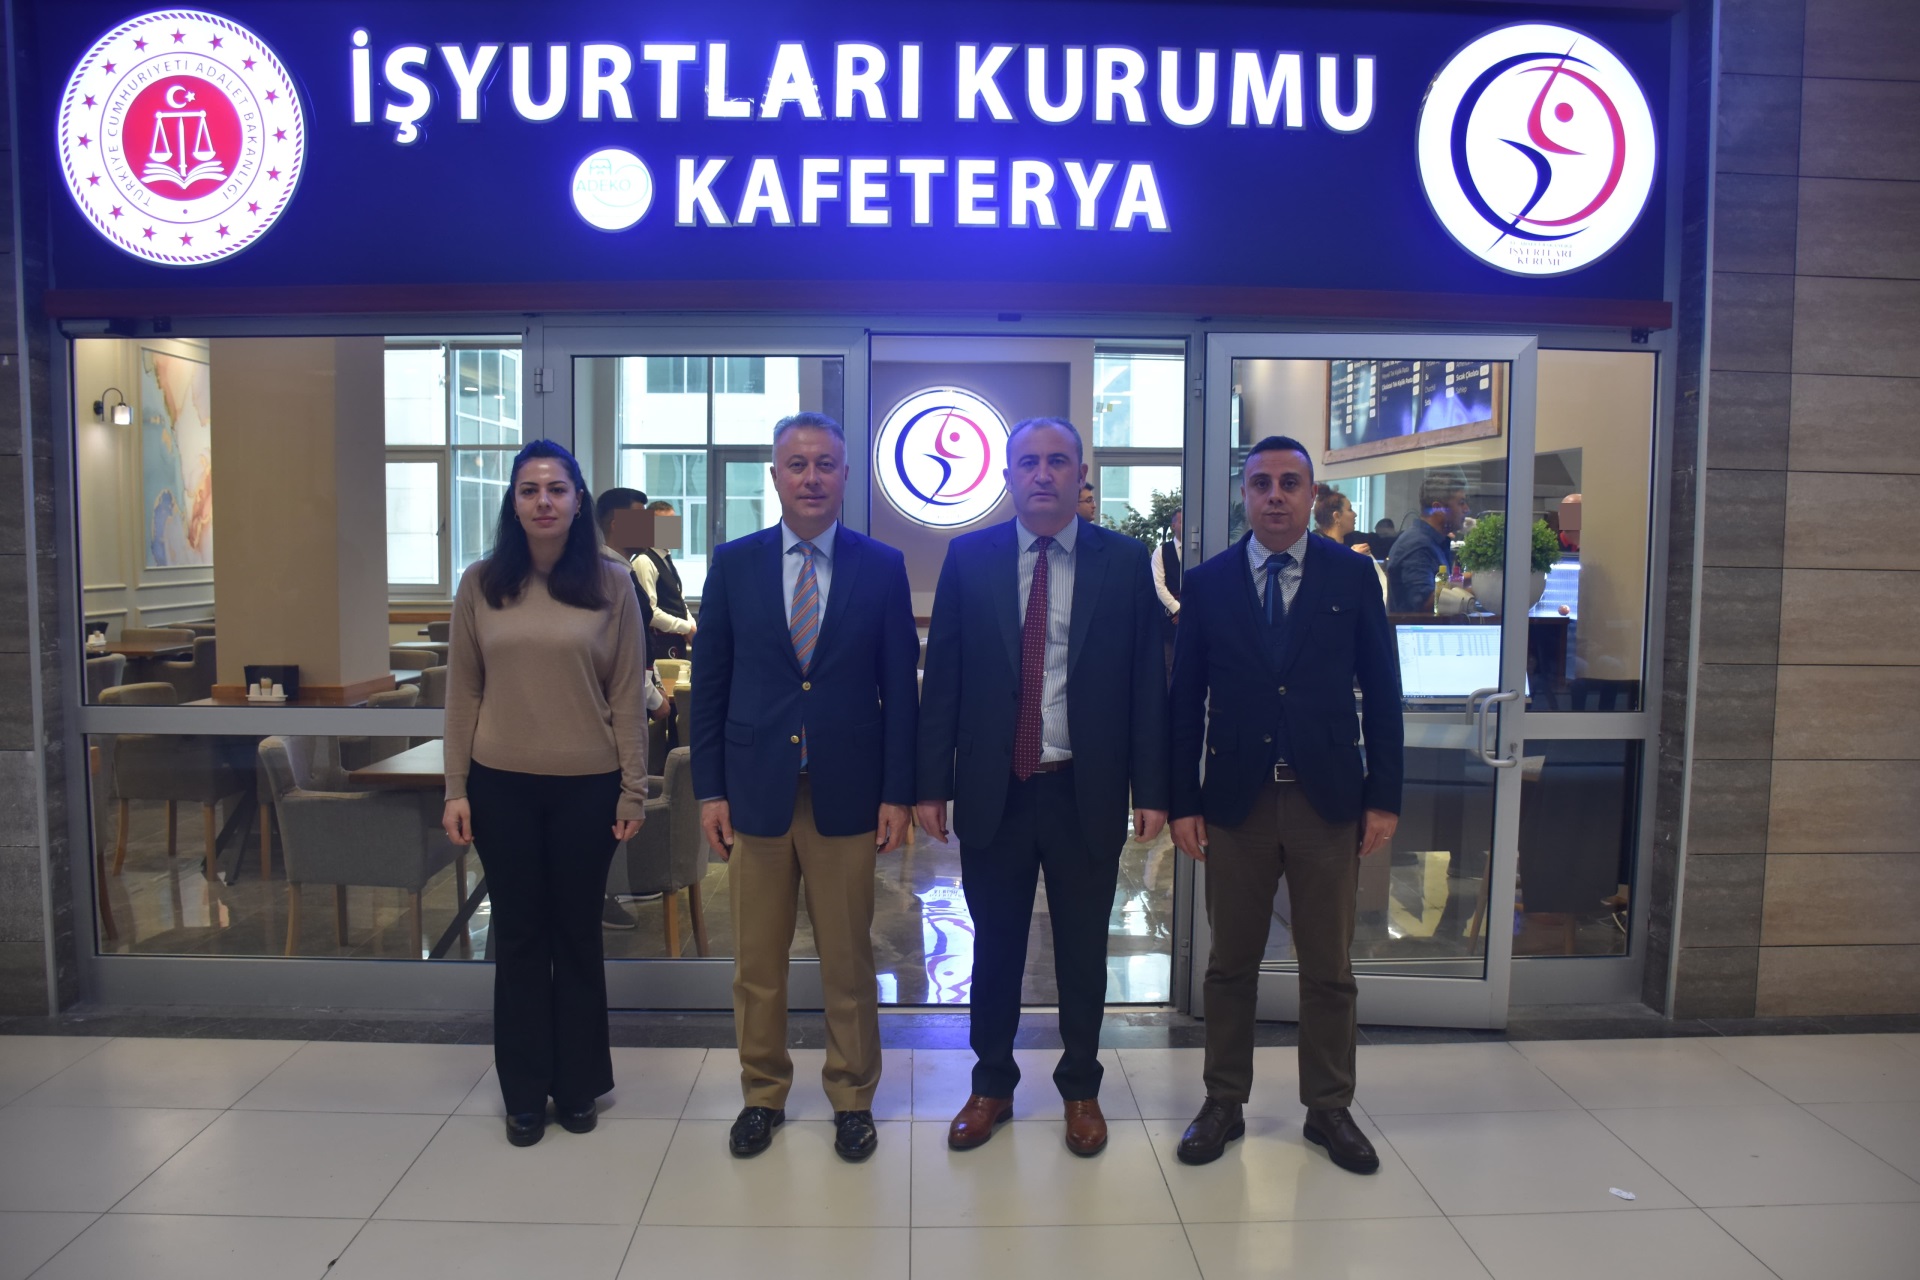 Kurumumuz İşyurtlarına bağlı kafeteryası Adana Adliyesinde hizmete açılmıştır.